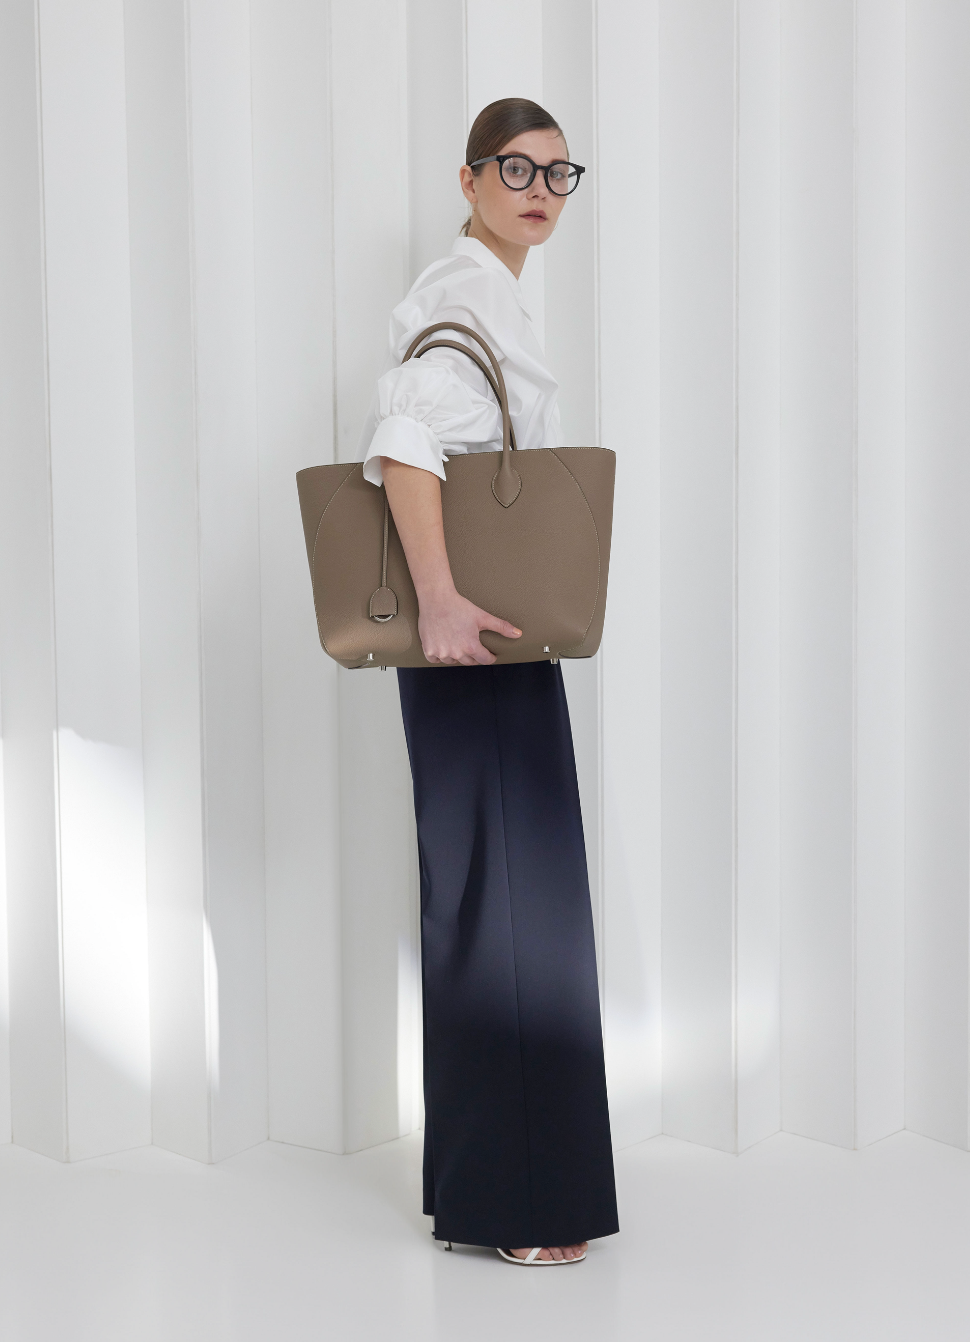 Podnikatelka nosí perfektní koženou tašku pro každodenní kancelářský život